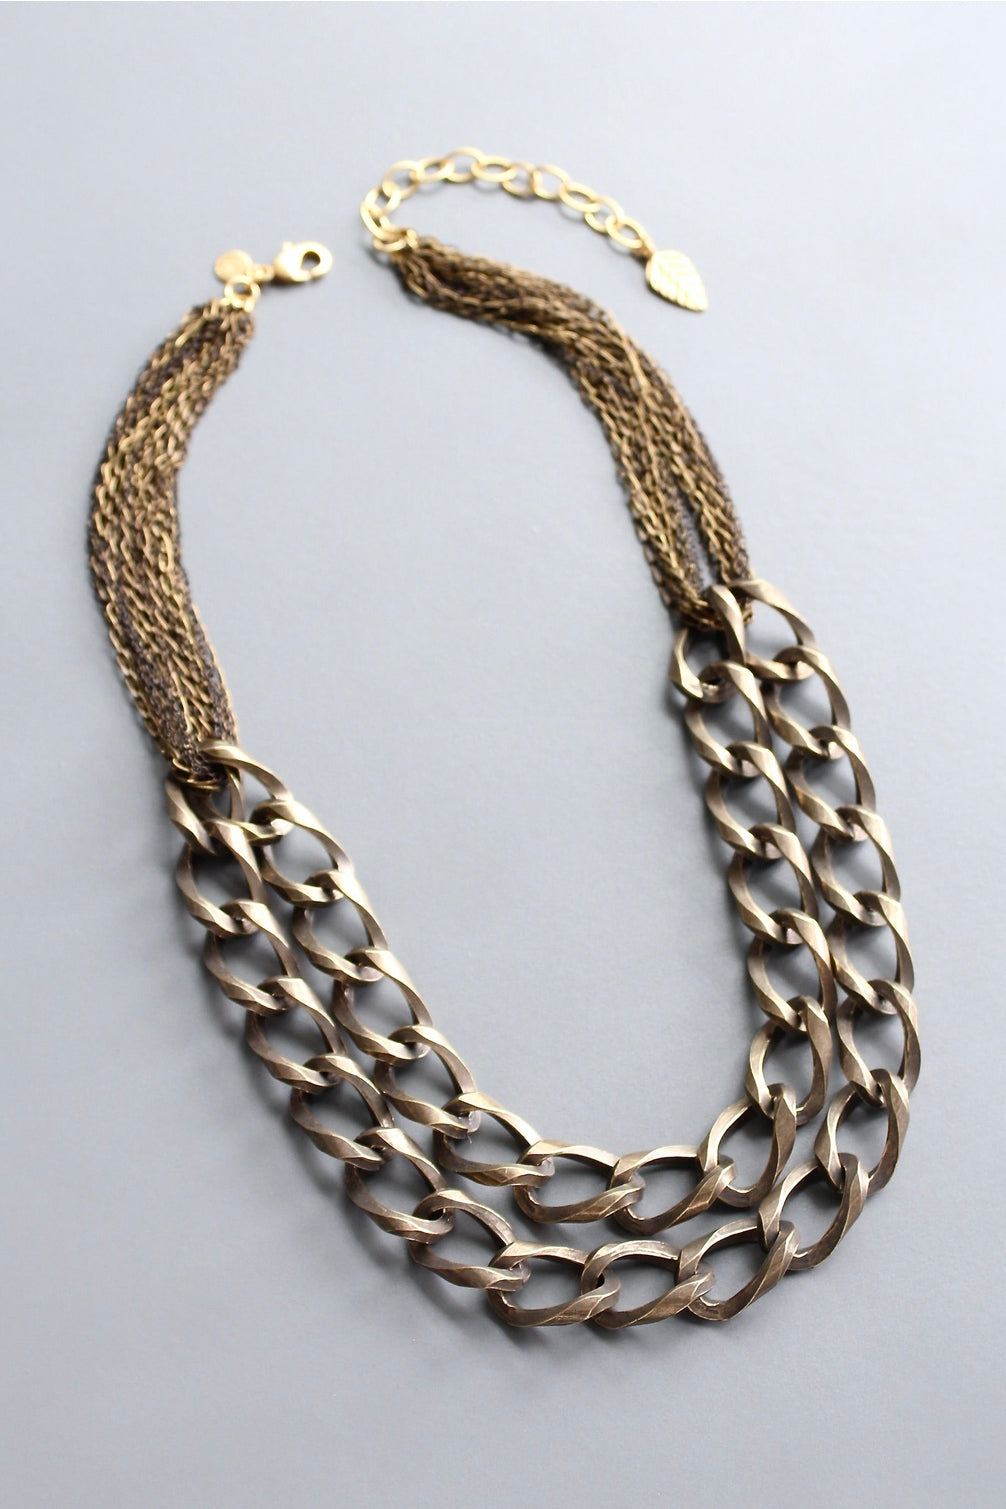 David Aubrey Oxidized Brass Necklace